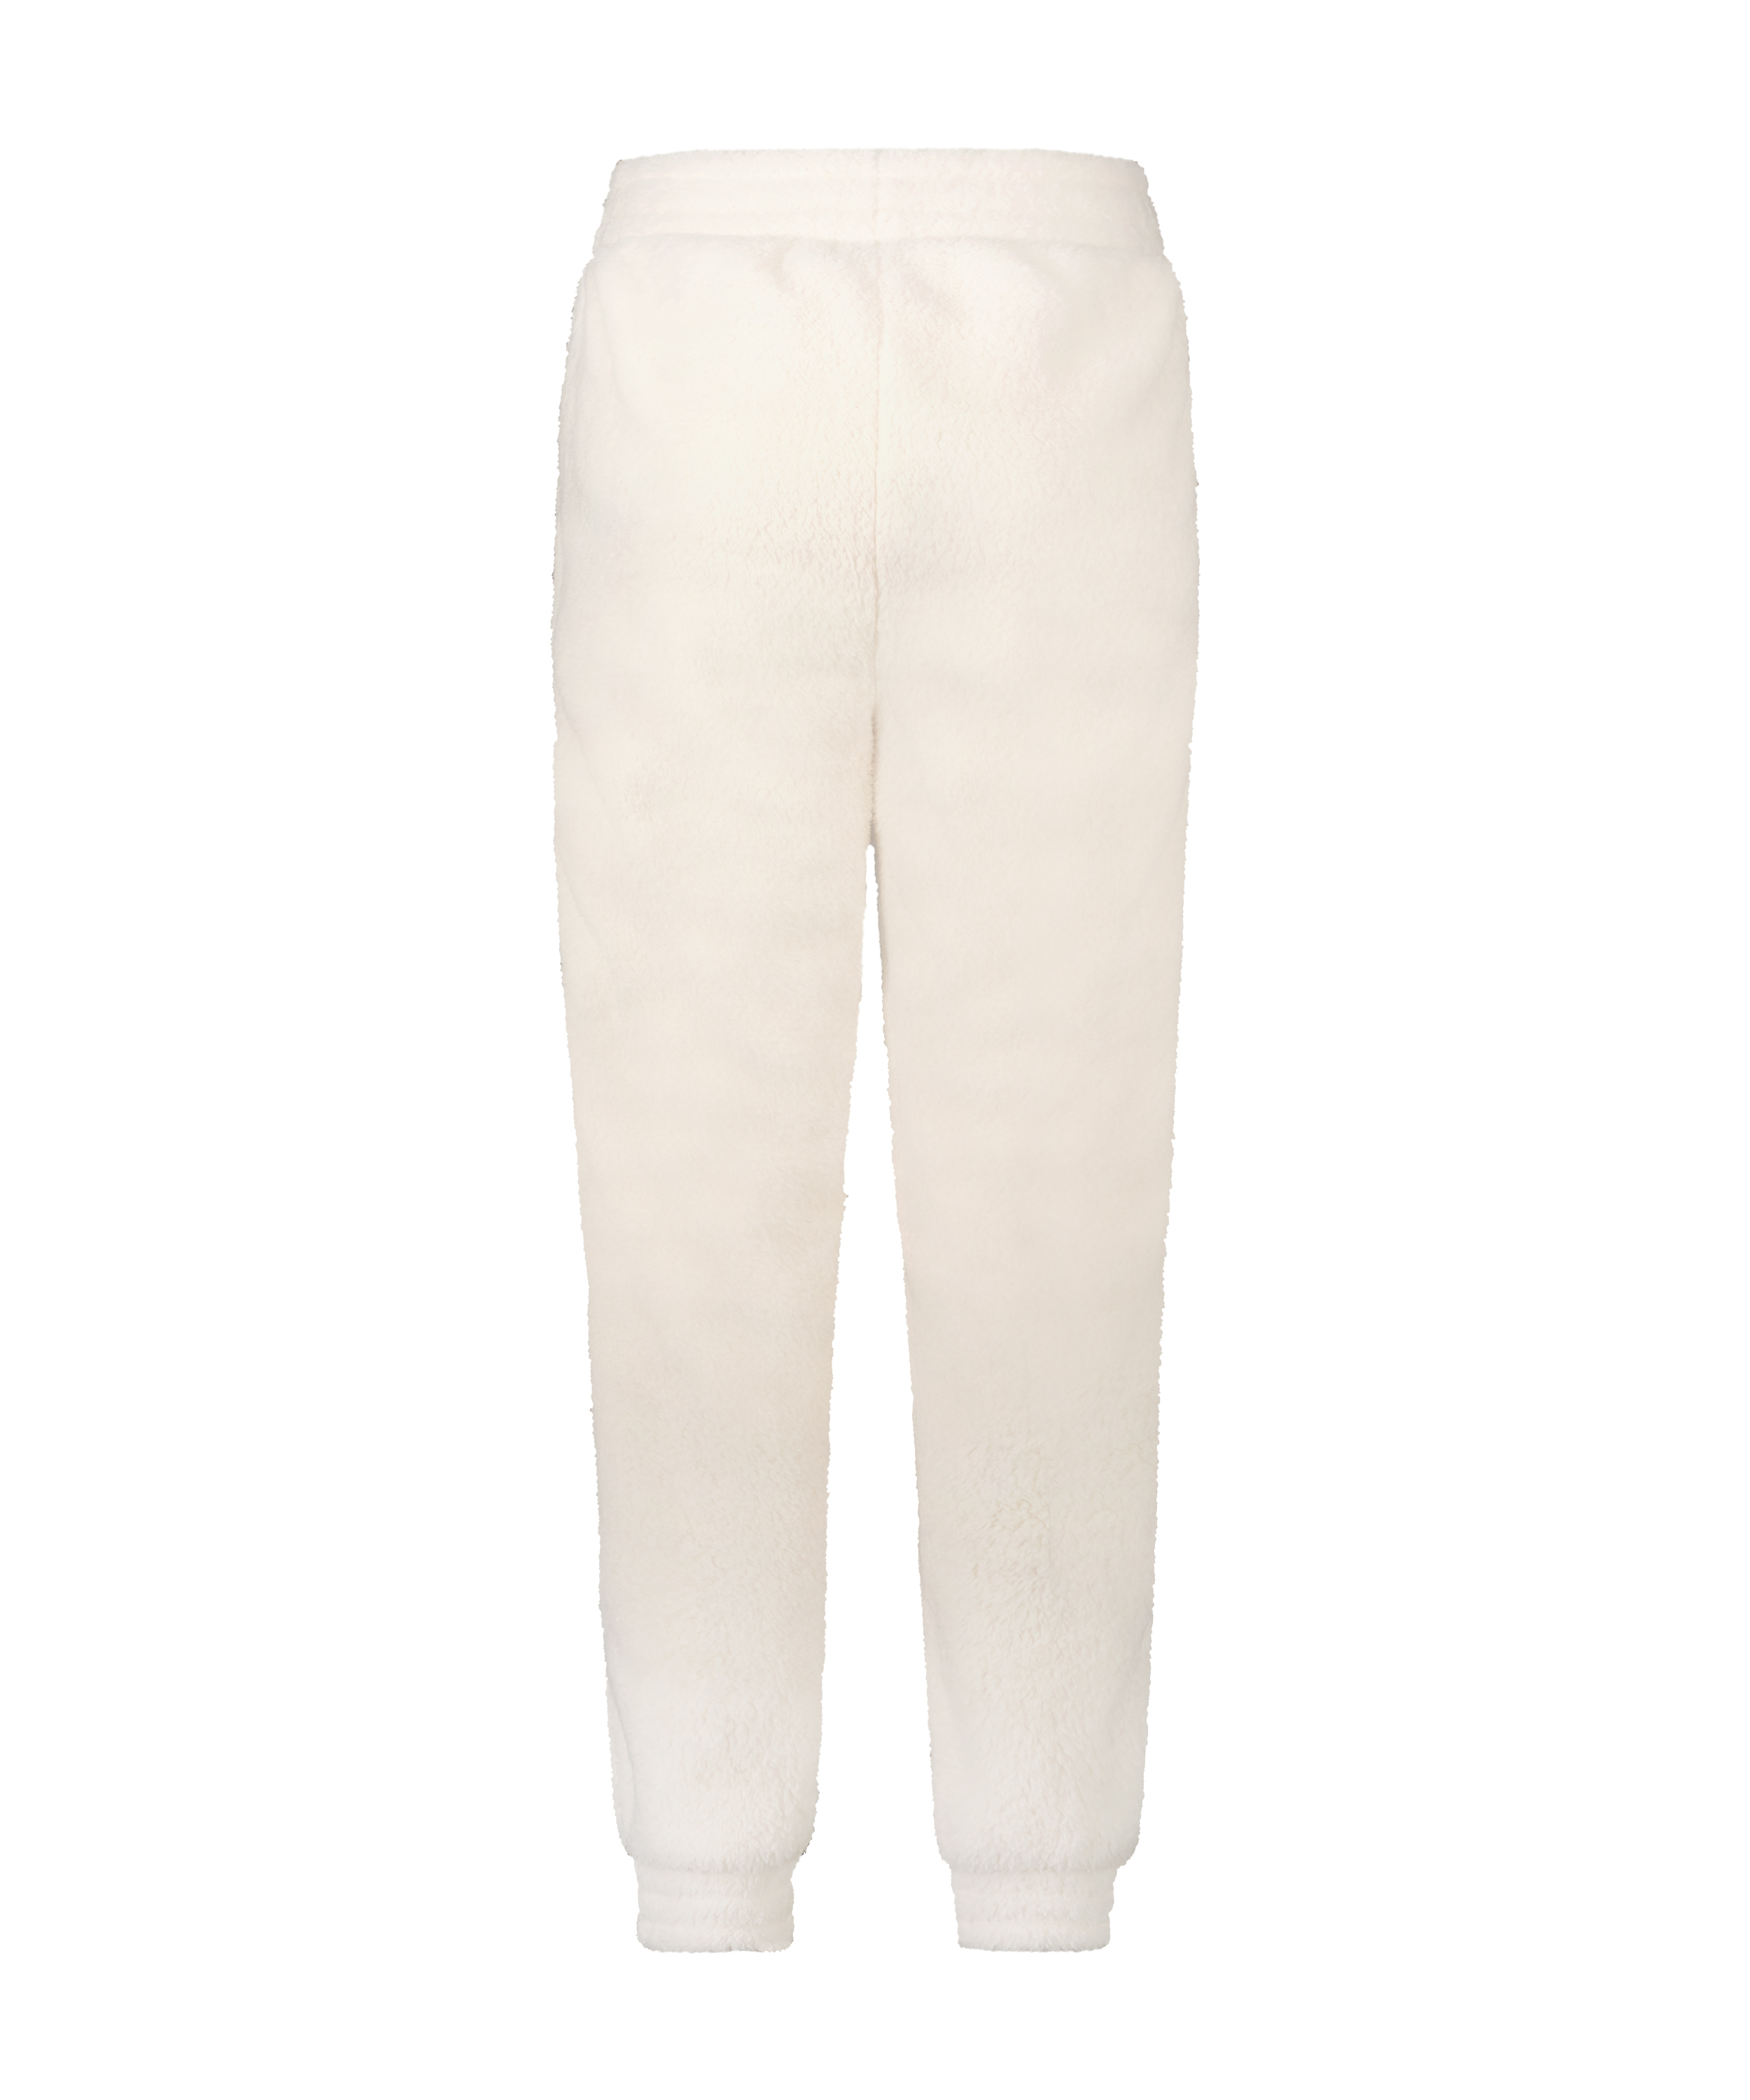 Pantalón de chándal de tejido polar tallas grandes, Blanco, main